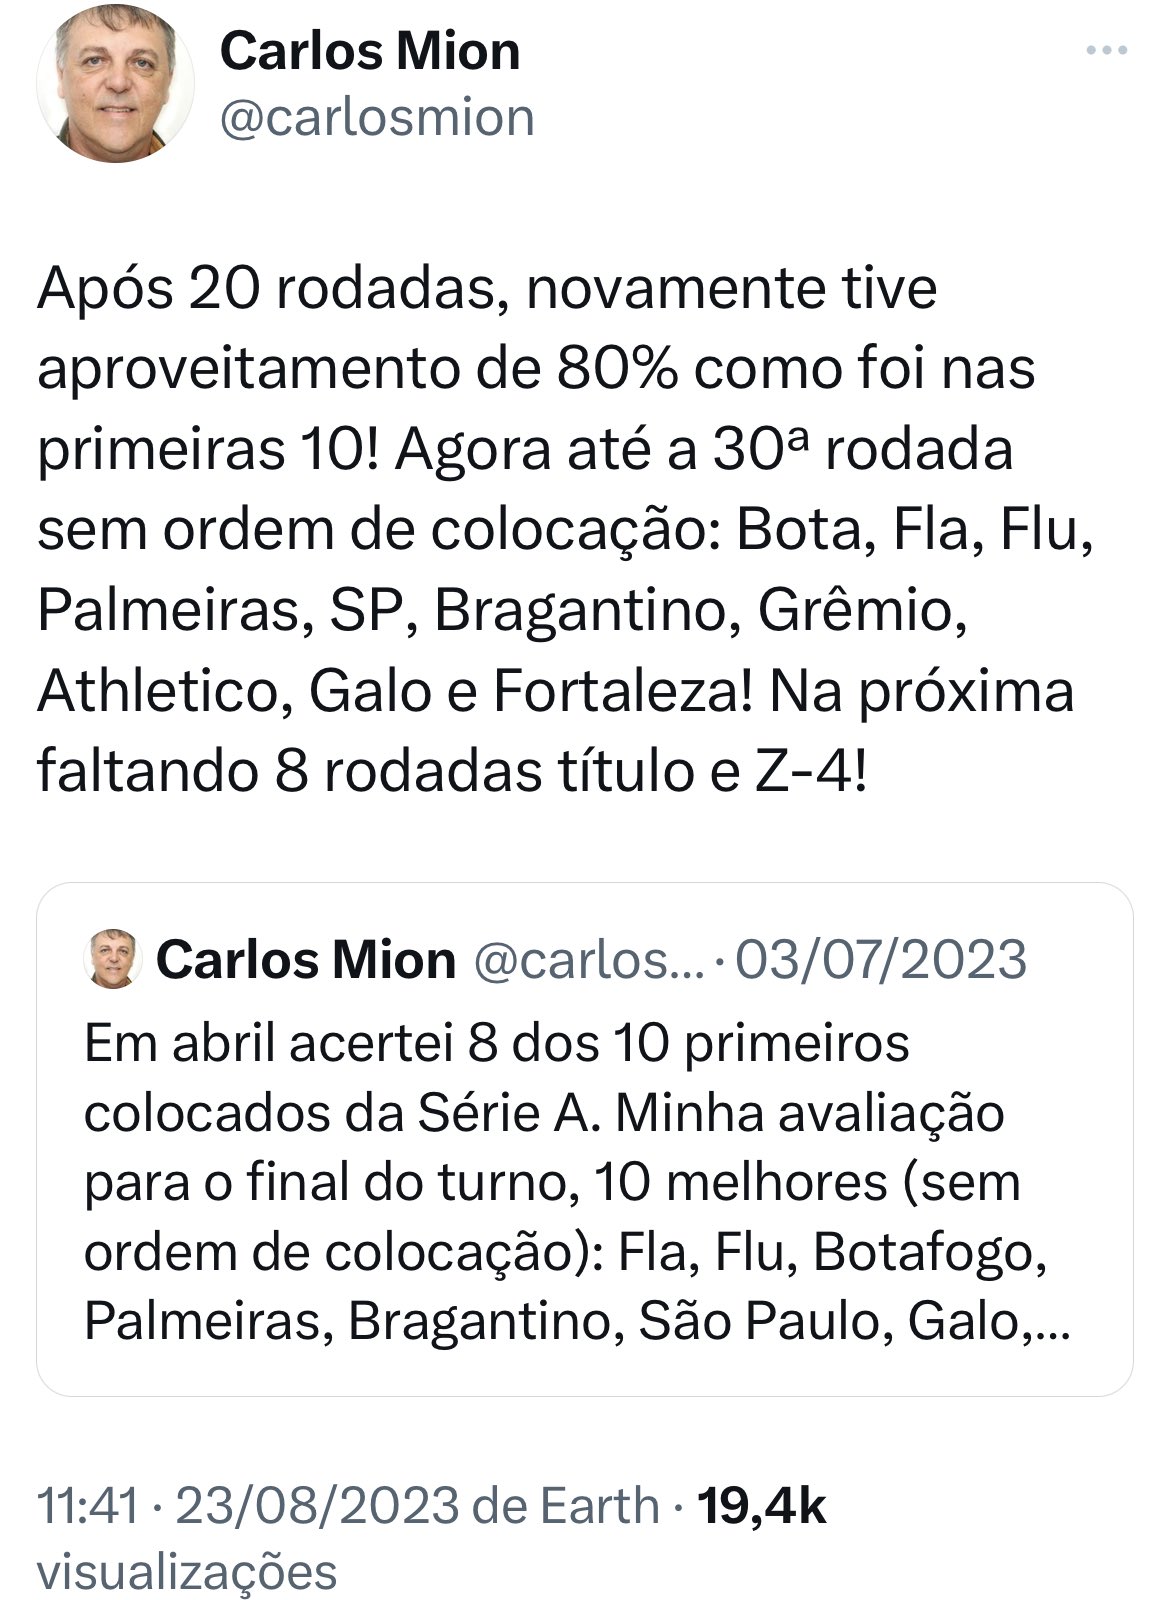 Flu vira, faz 4 a 1 no Botafogo e fica muito próximo do título